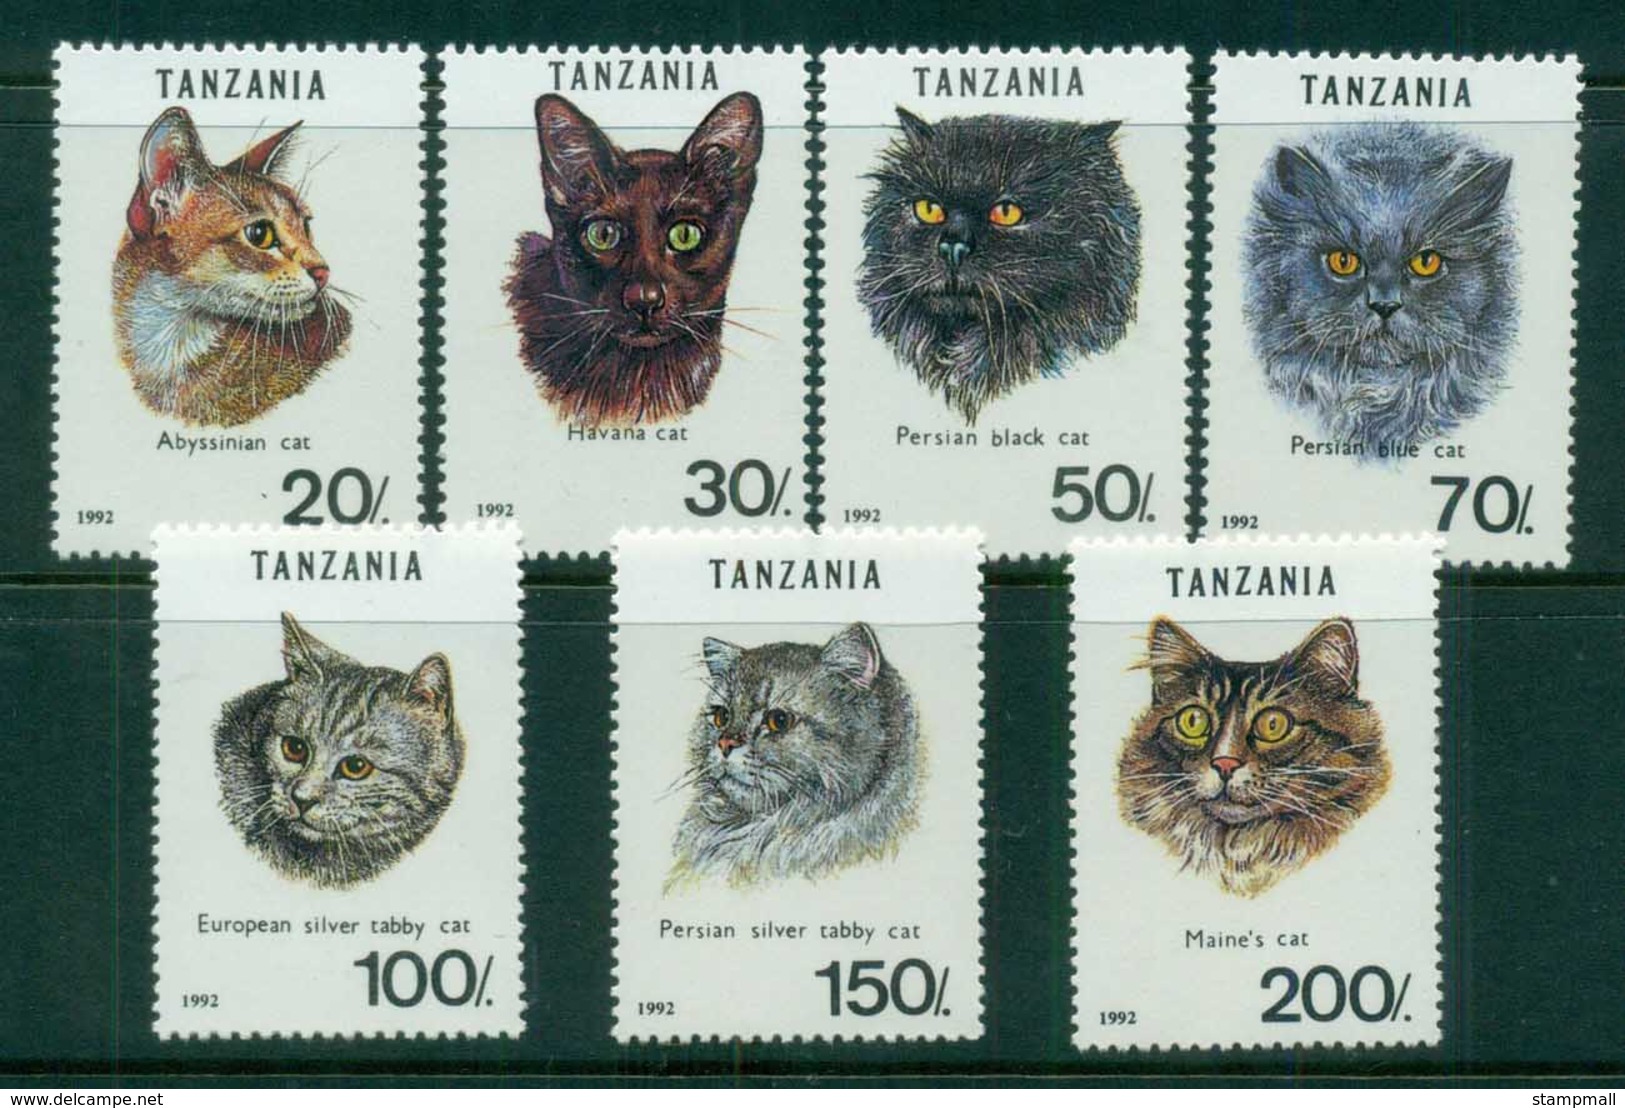 Tanzania 1992 Cats MUH - Swaziland (1968-...)